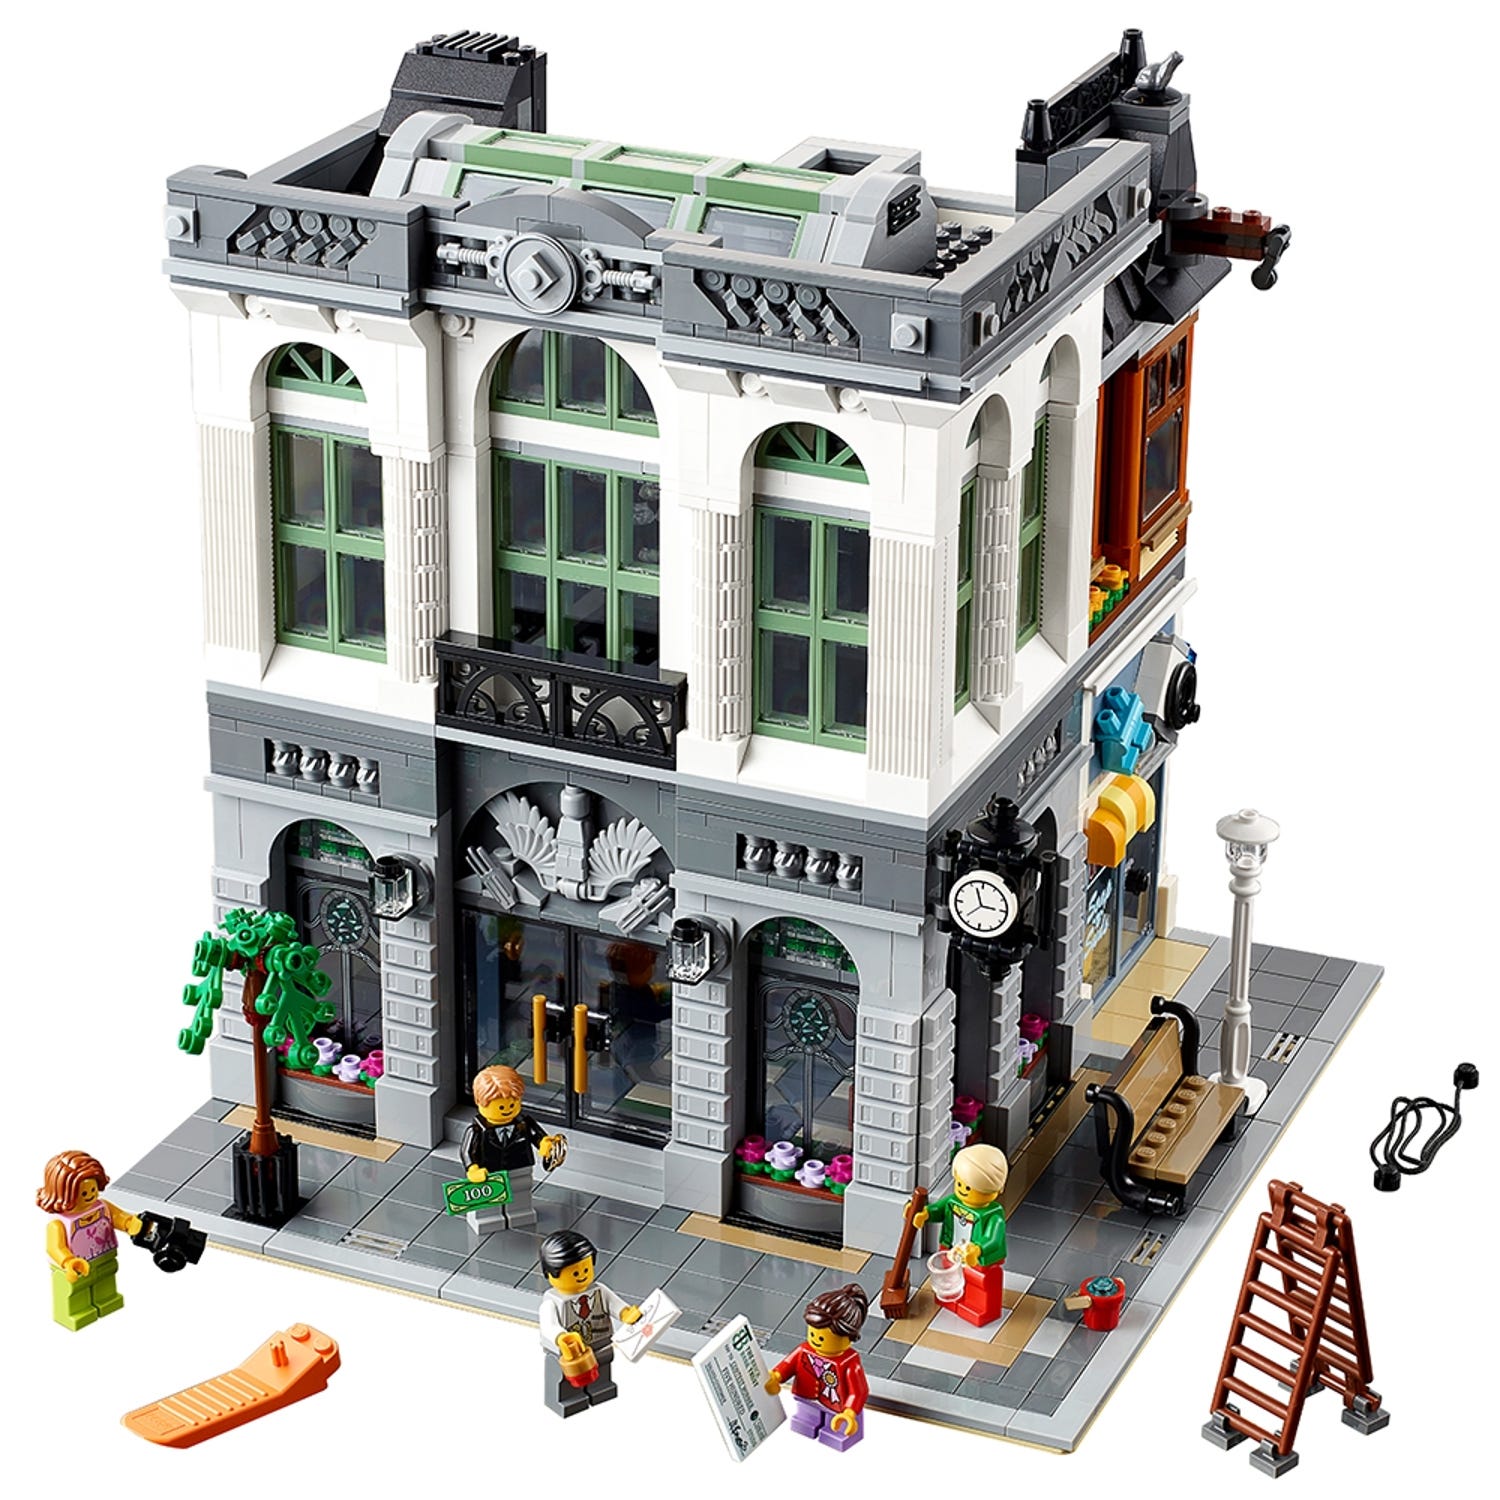 Uitdrukking solide twist Brick Bank 10251 | Creator Expert | Buy online at the Official LEGO® Shop NL